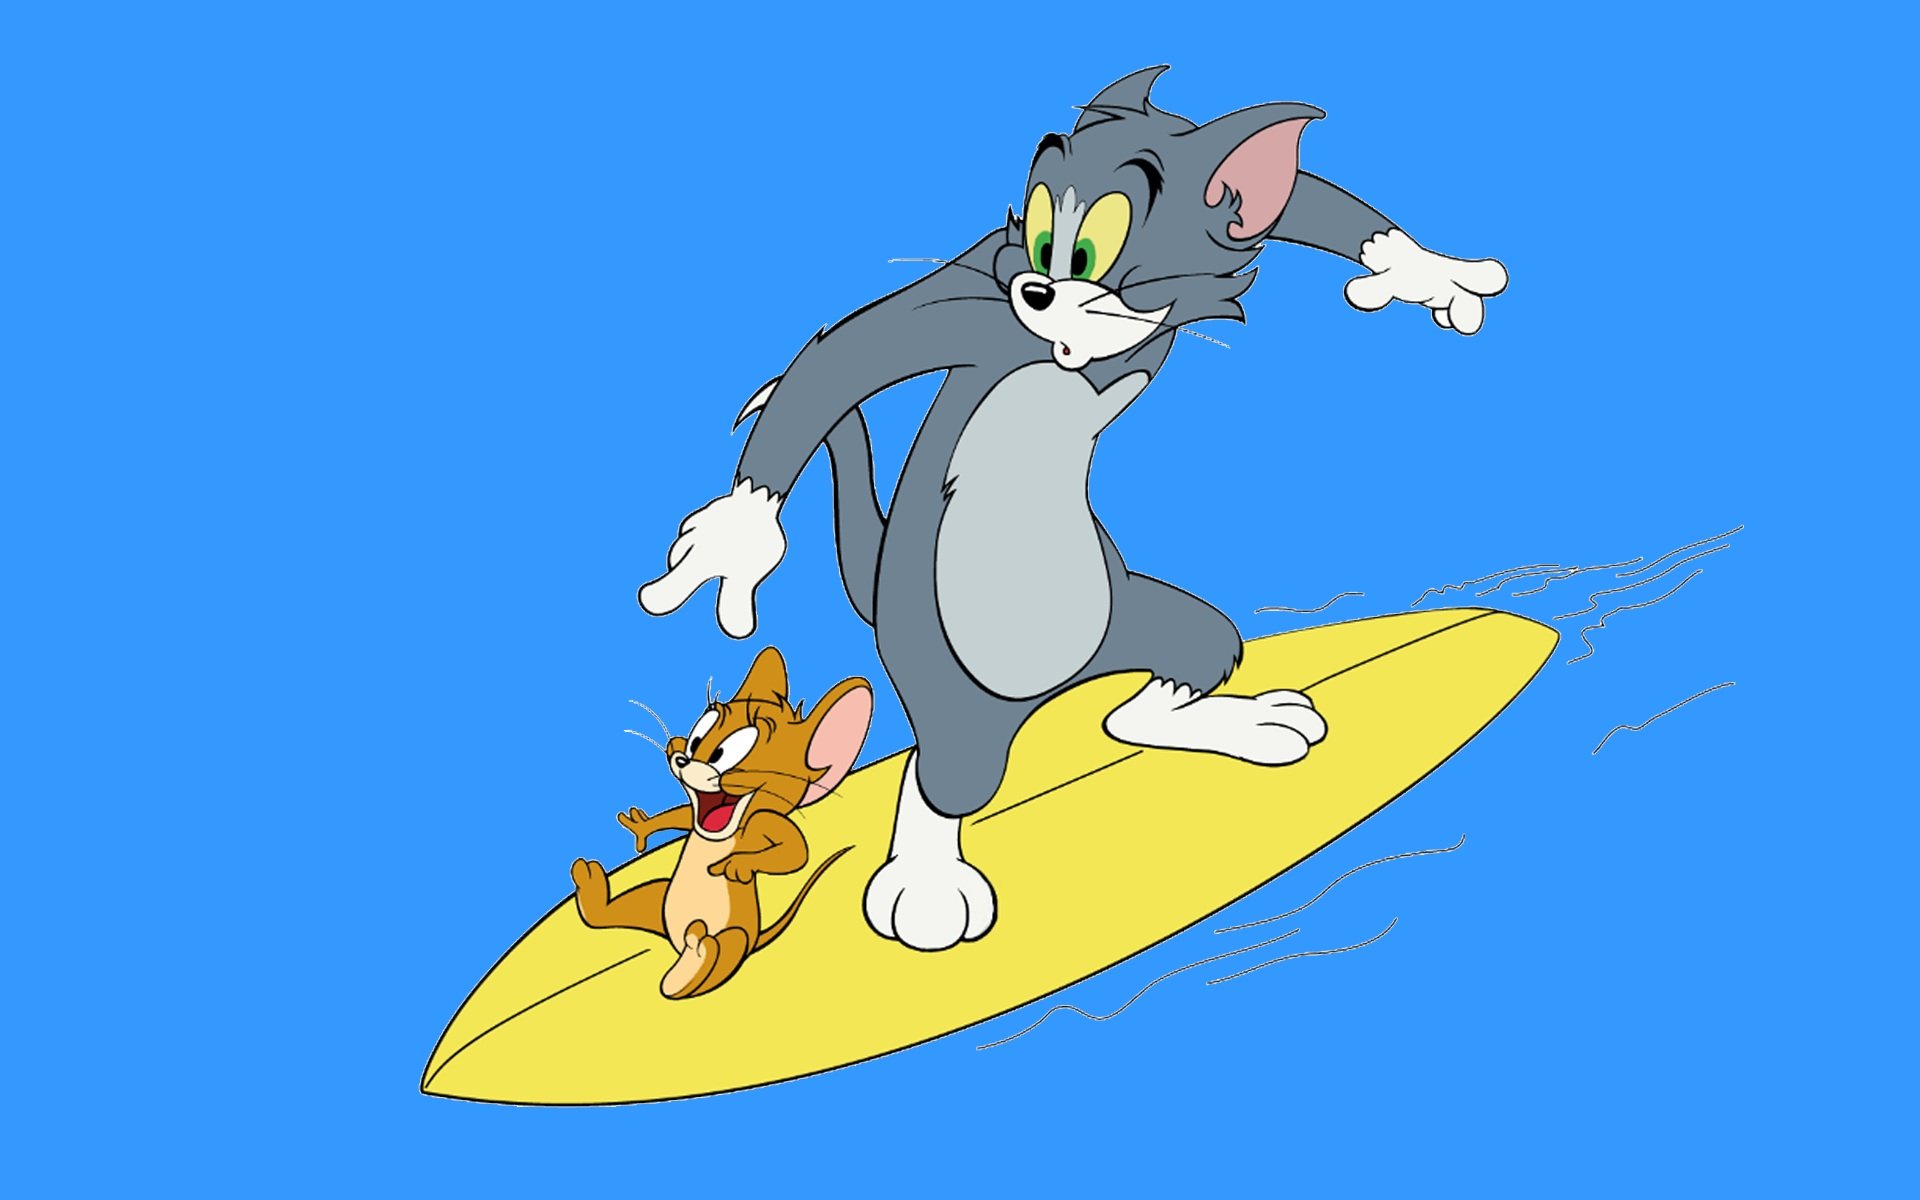 Jerry том и джерри. Tom and Jerry. Тои м Джерри. Том из том и Джерри.